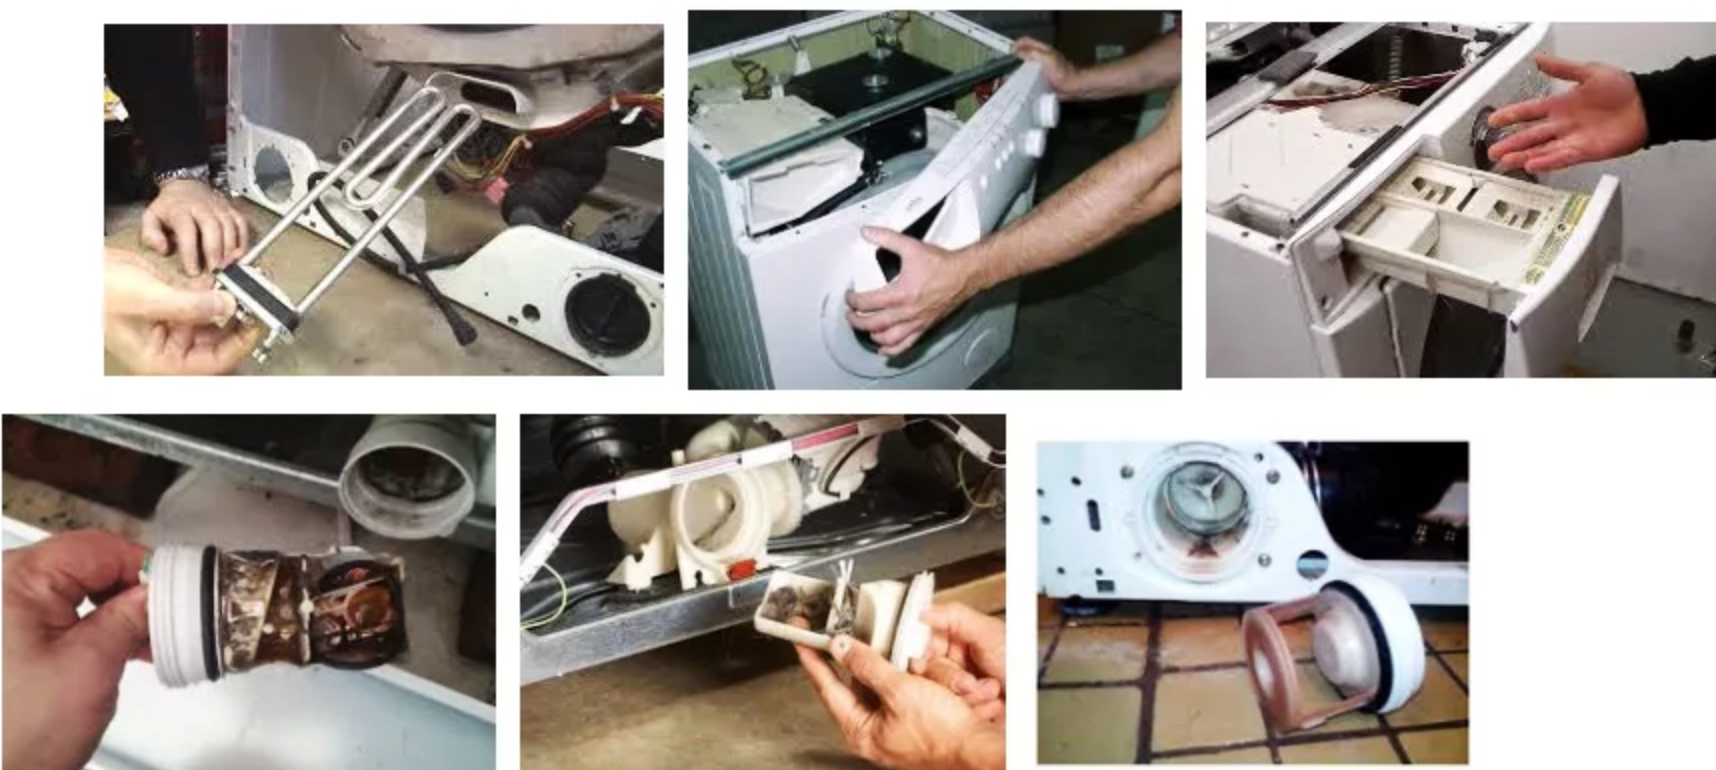 Не крутится барабан стиральной машины: причины и способы устранения неполадок